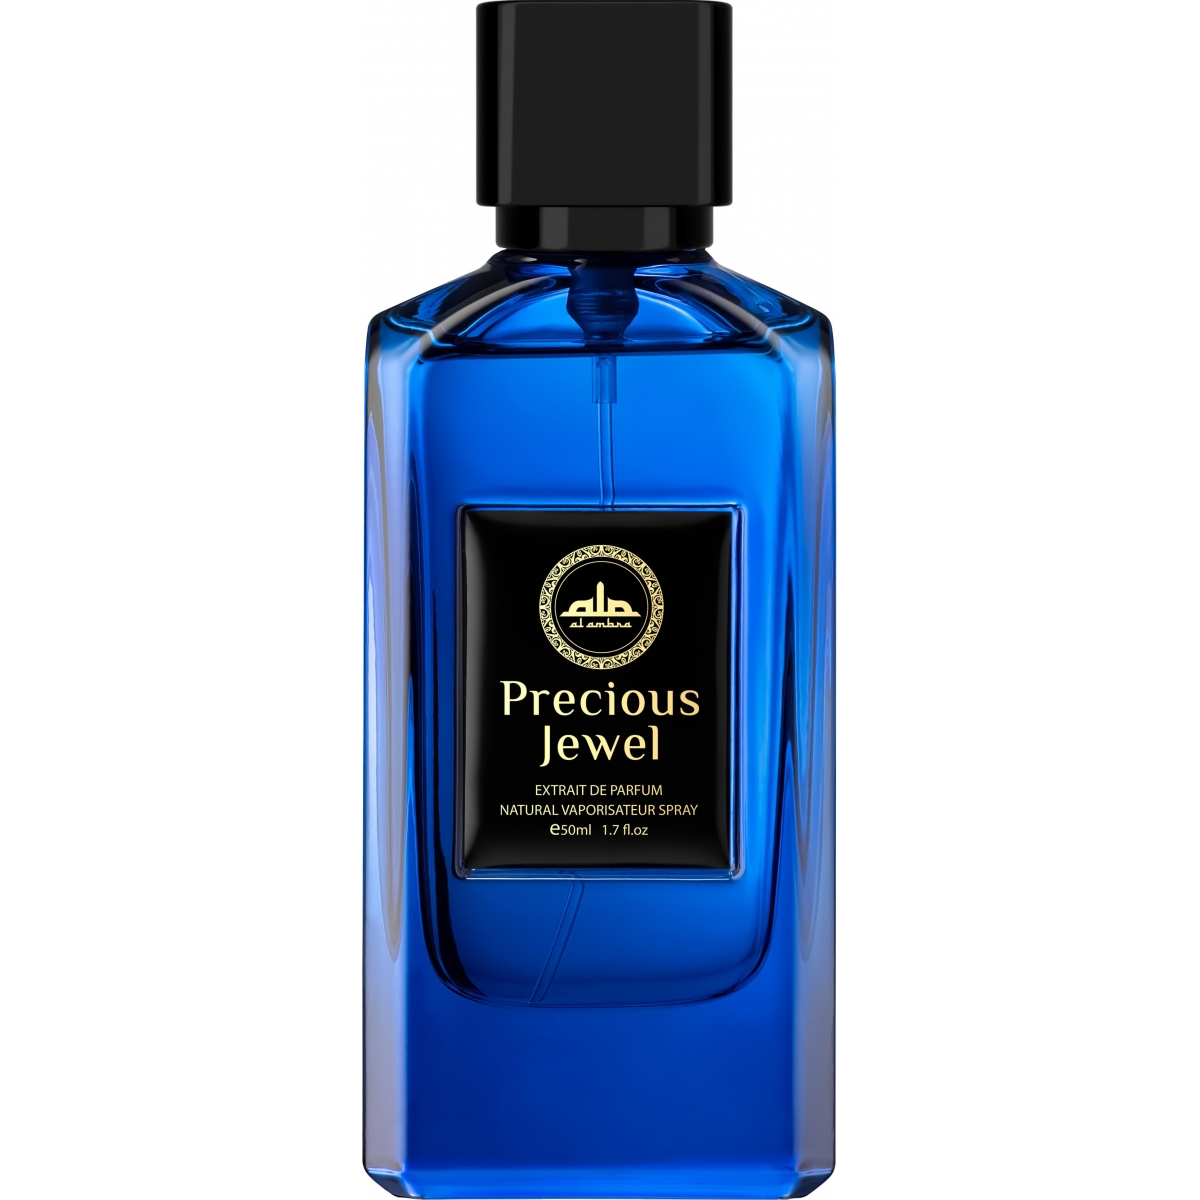 Precious Jewel Al Ambra Perfumes Perfumes, Profumi Unisex, Arada Perfumes